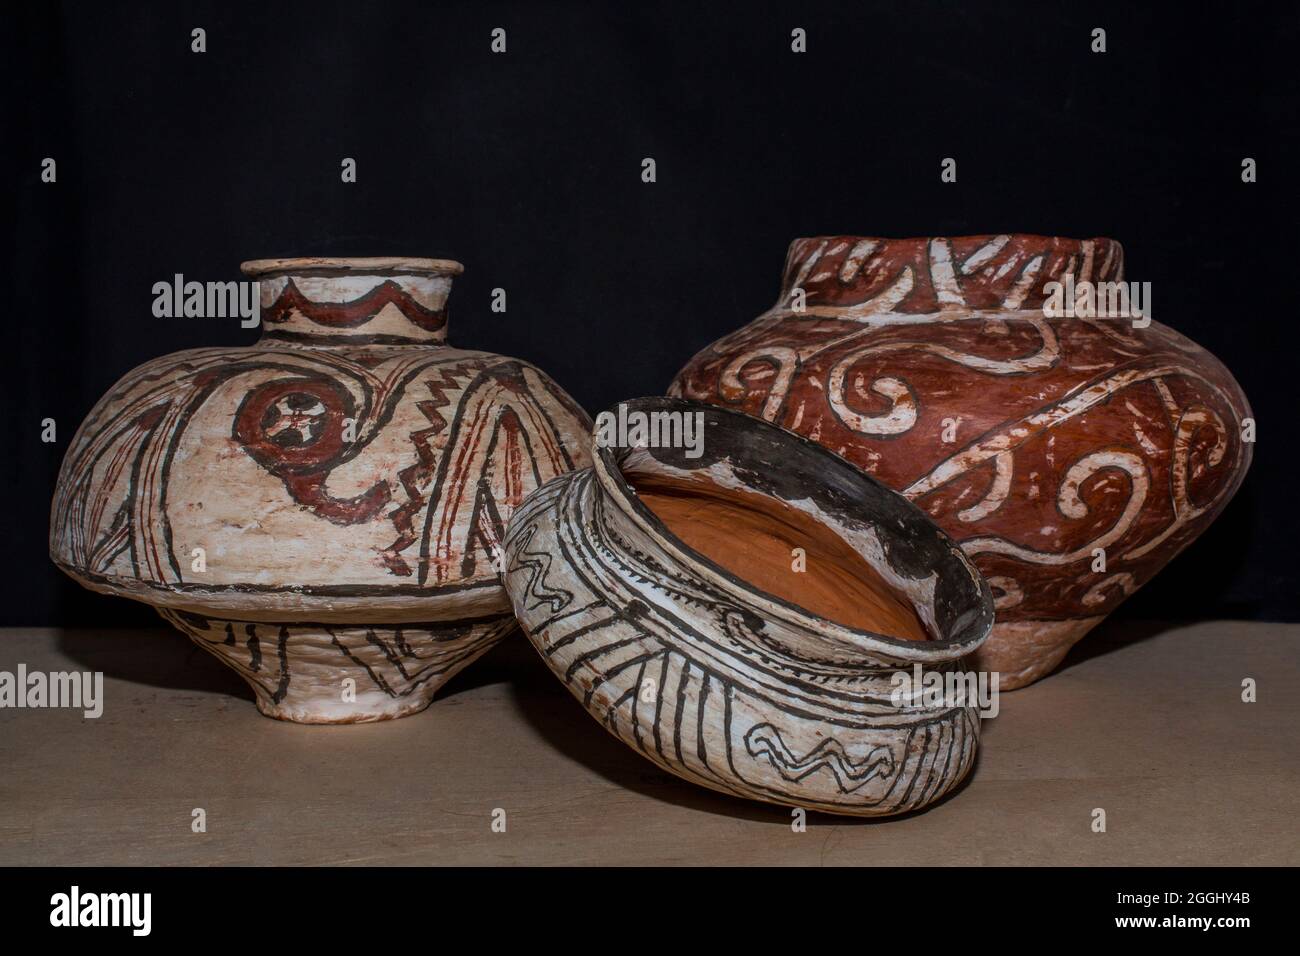 Reproduktion von Cucuteni Culture Keramiktöpfen mit traditioneller Dekorfarbe. Stockfoto